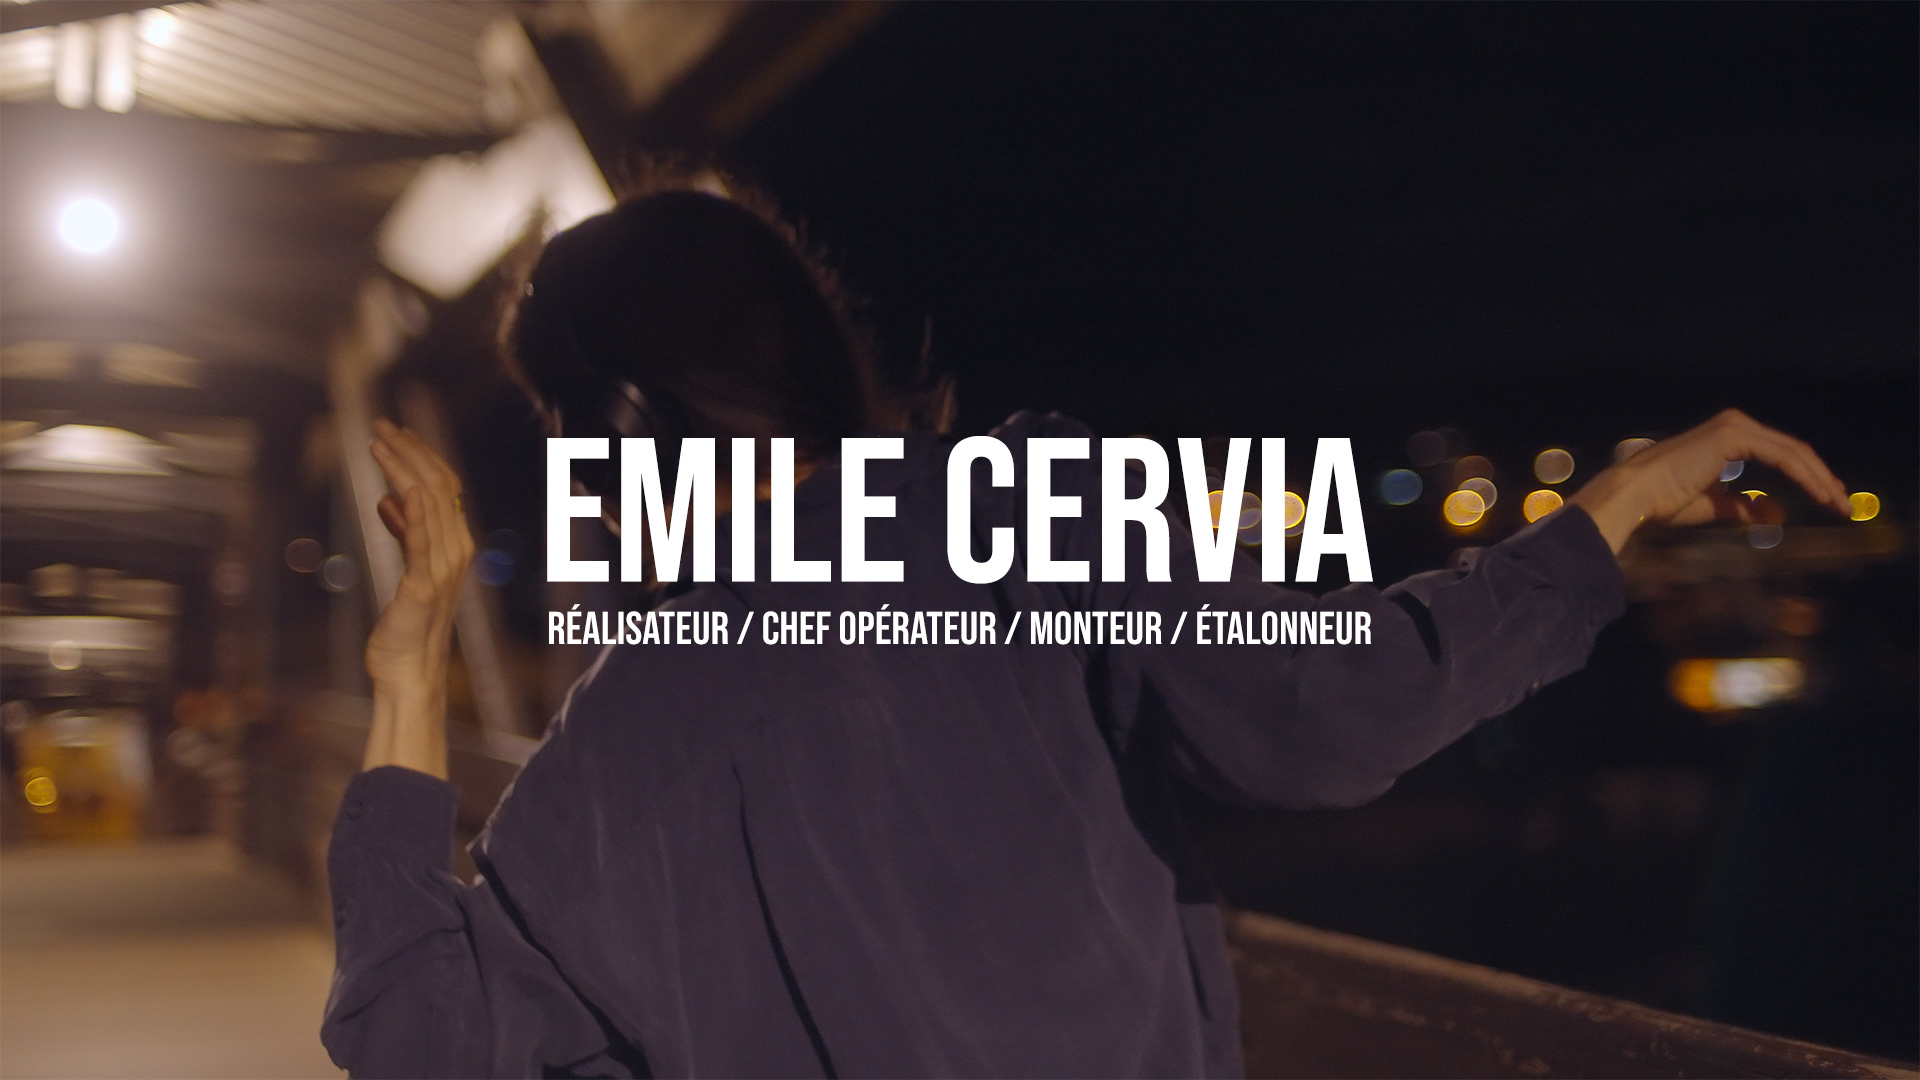 (c) Emile-cervia.com